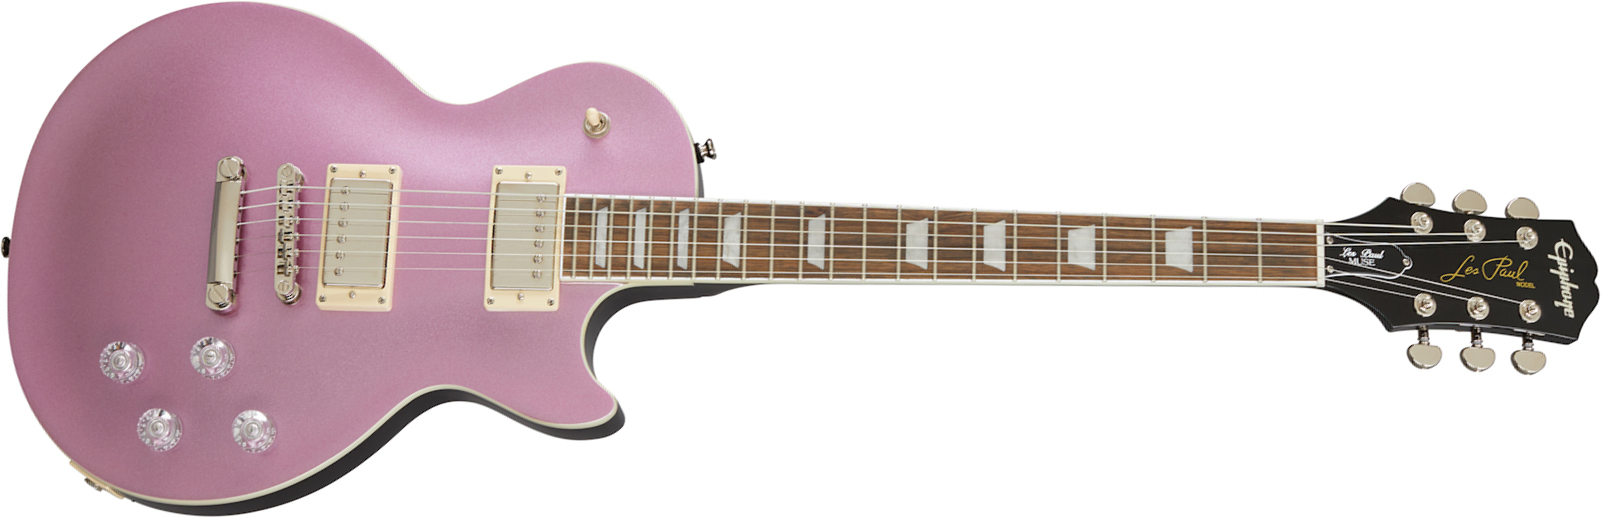 Epiphone Les Paul Muse Modern 2h Ht Lau - Purple Passion Metallic - Guitarra eléctrica de corte único. - Main picture